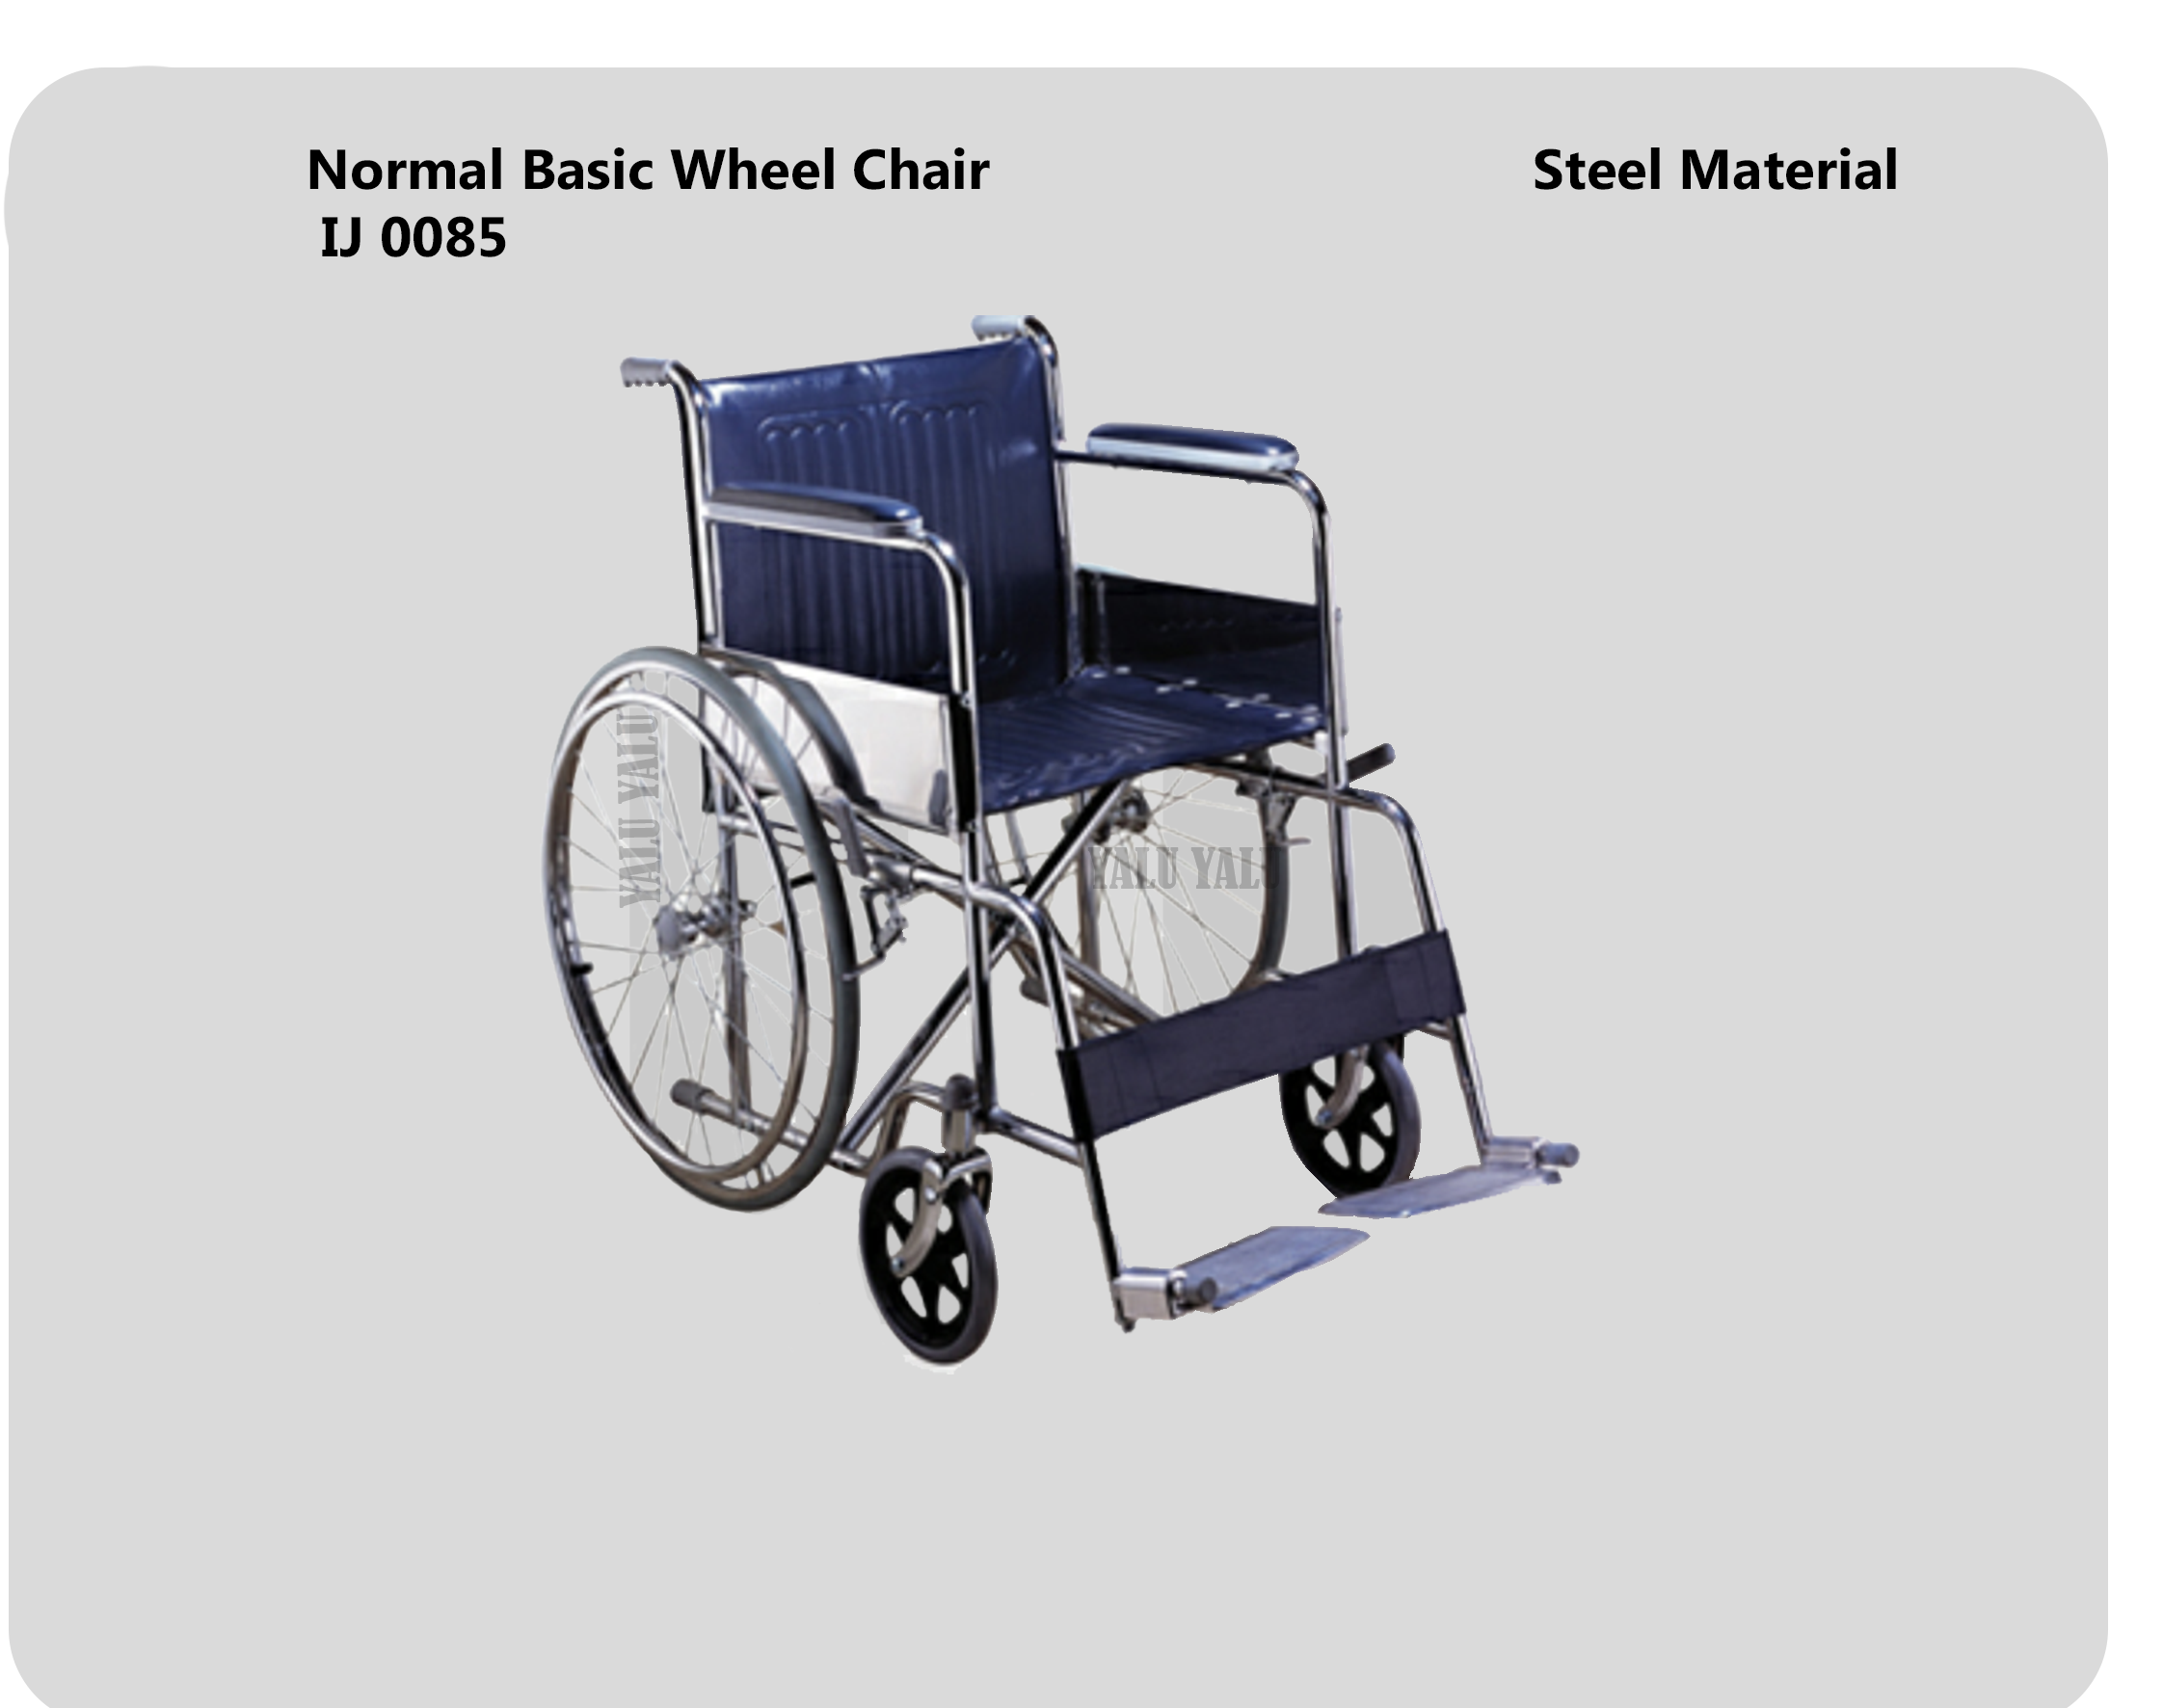 Wheel Chair yaluyalu